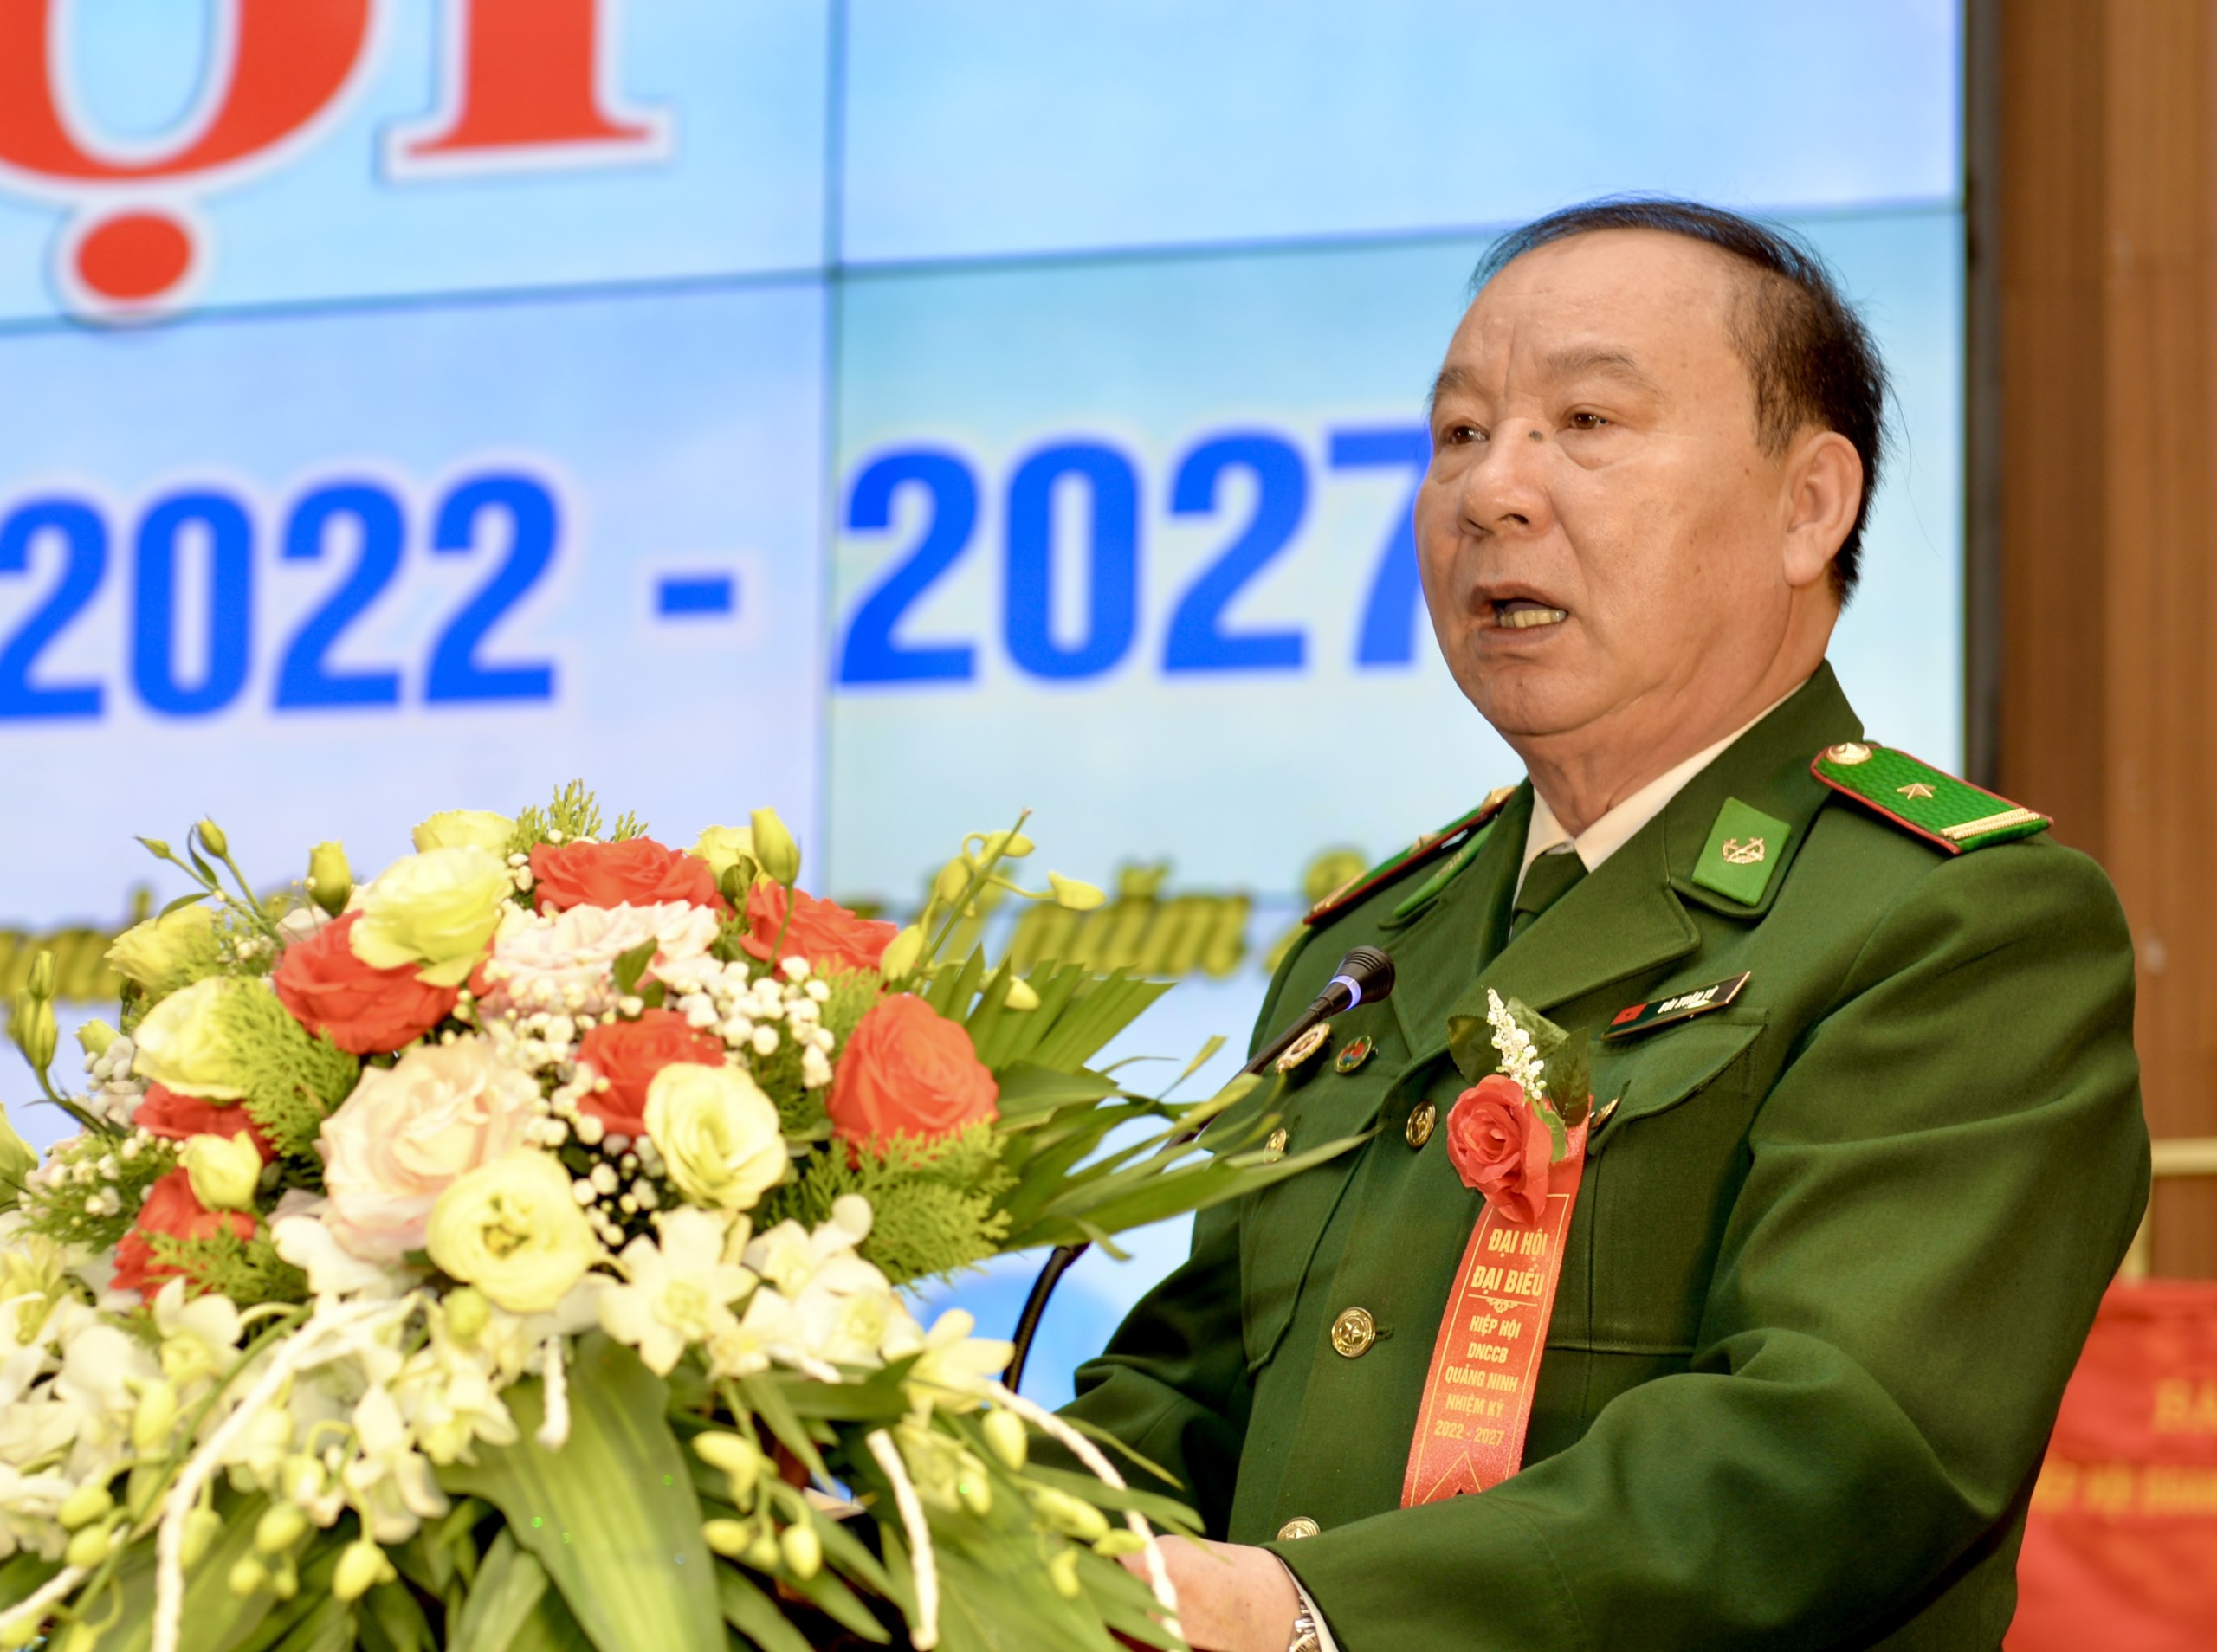 Ông Bùi Xuân Tờ, Tổng Giám đốc Công ty Cổ phần Tập đoàn kinh tế Hạ Long tái đắc cử  Chủ tịch Hiệp hội Doanh nghiệp Cựu chiến binh tỉnh Quảng Ninh khóa III, nhiệm kỳ 2022 - 2027.